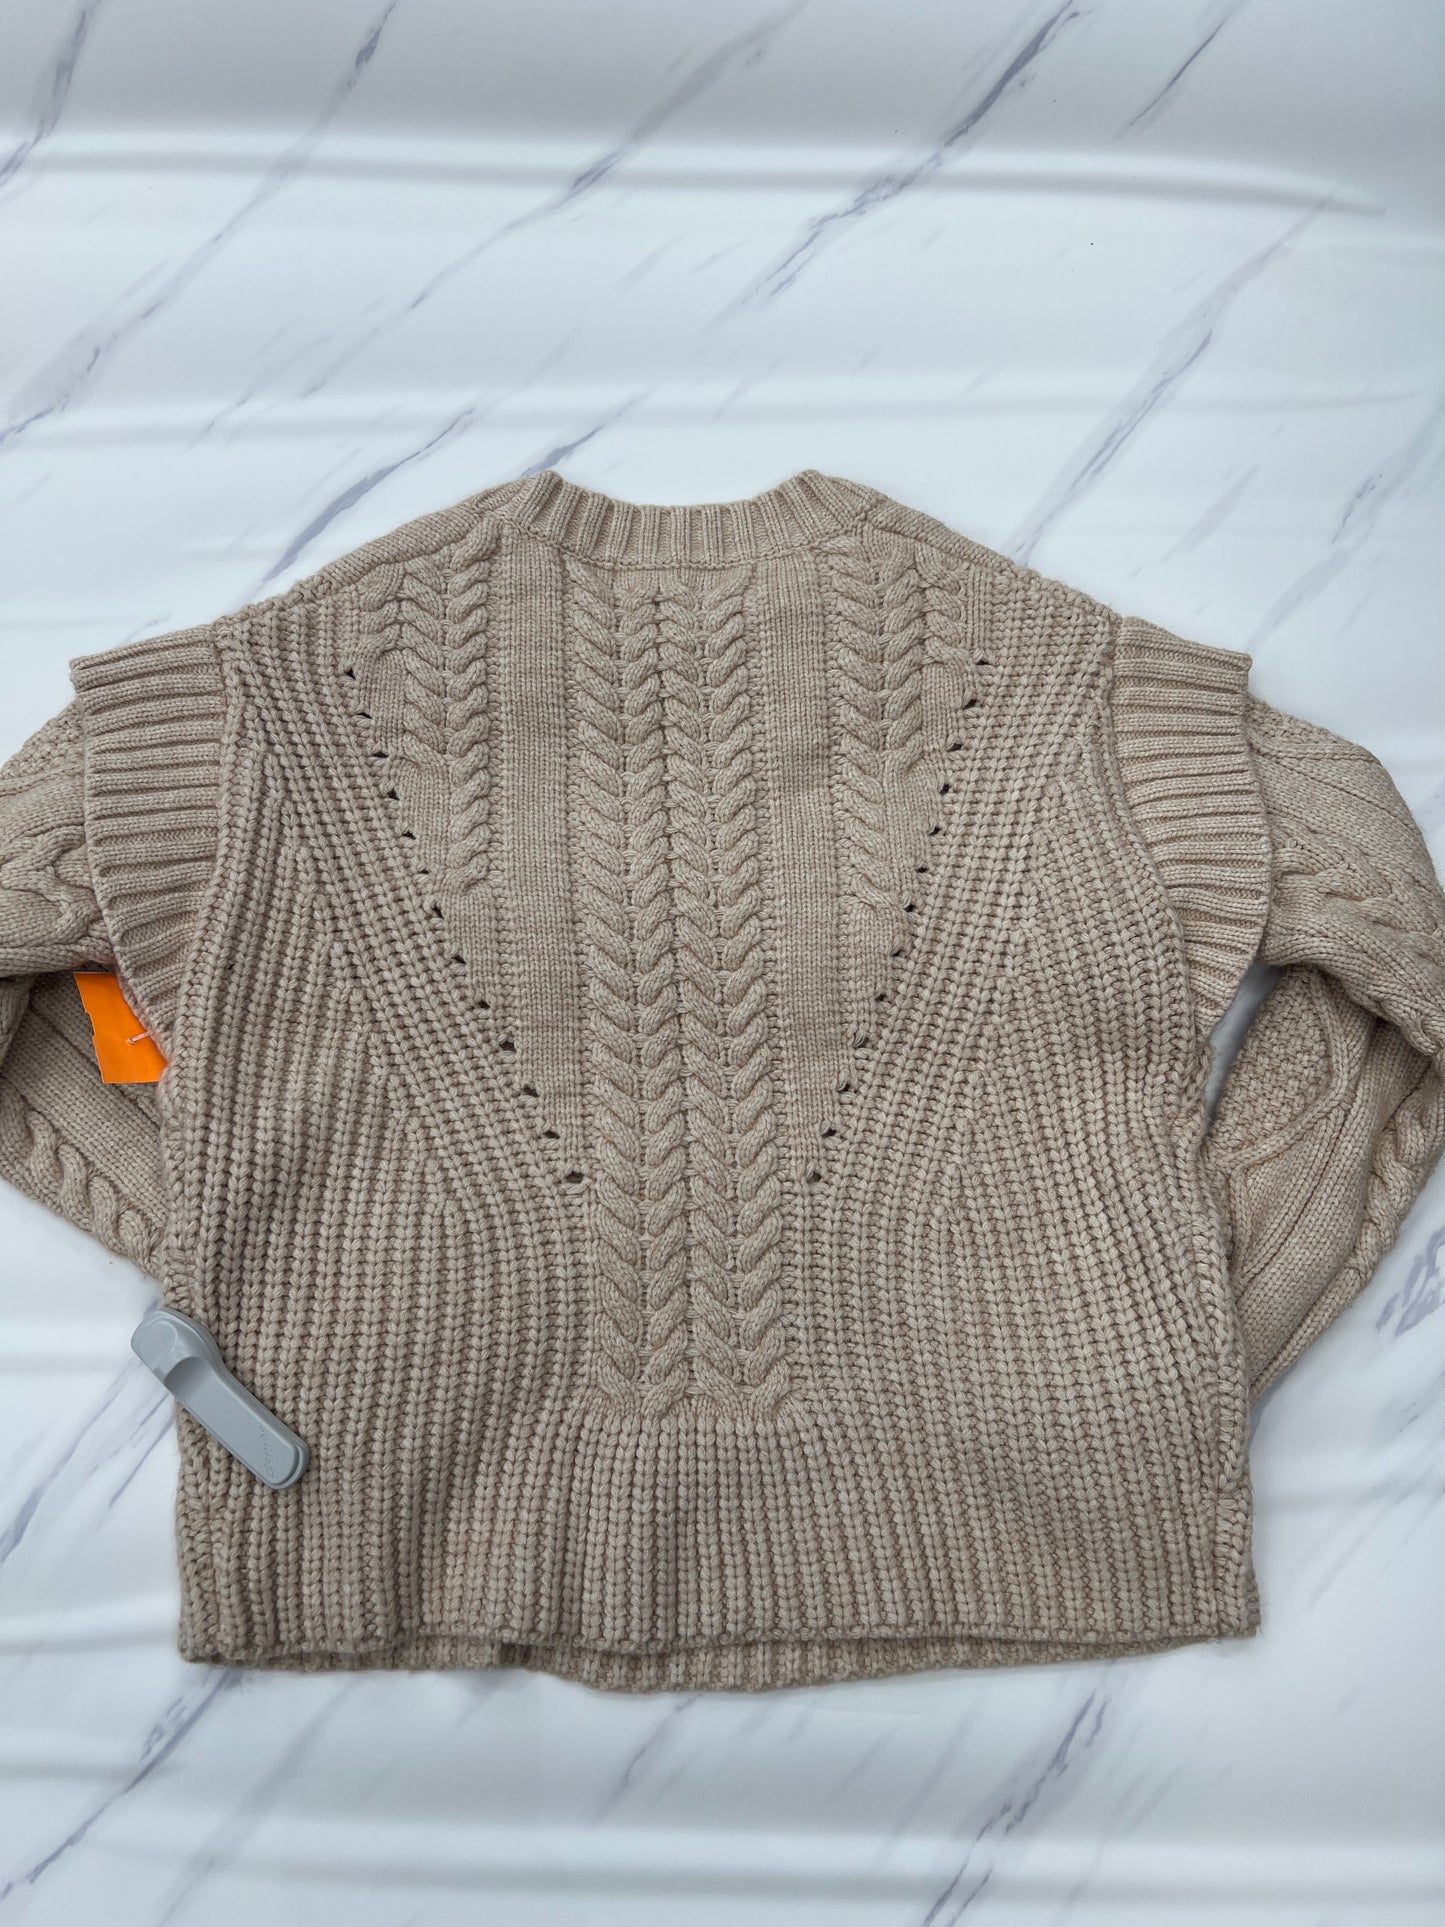 Sweater By Cmc  Size: Xs